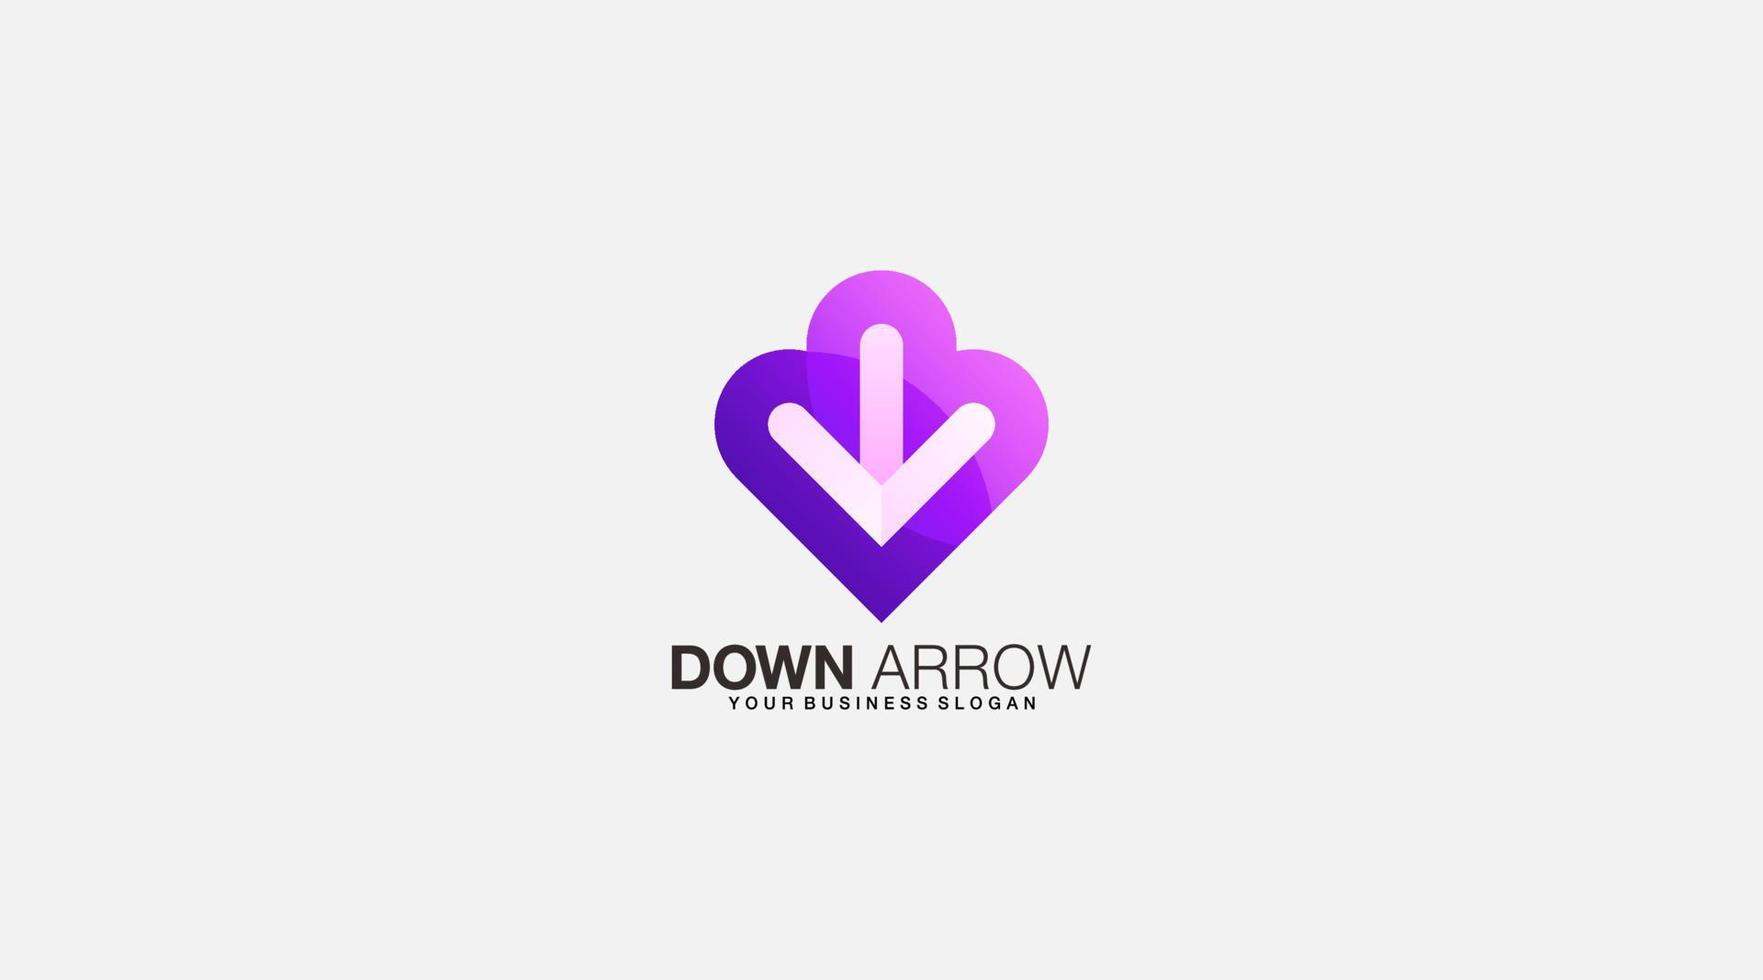 Down arrow vector design logo template icon